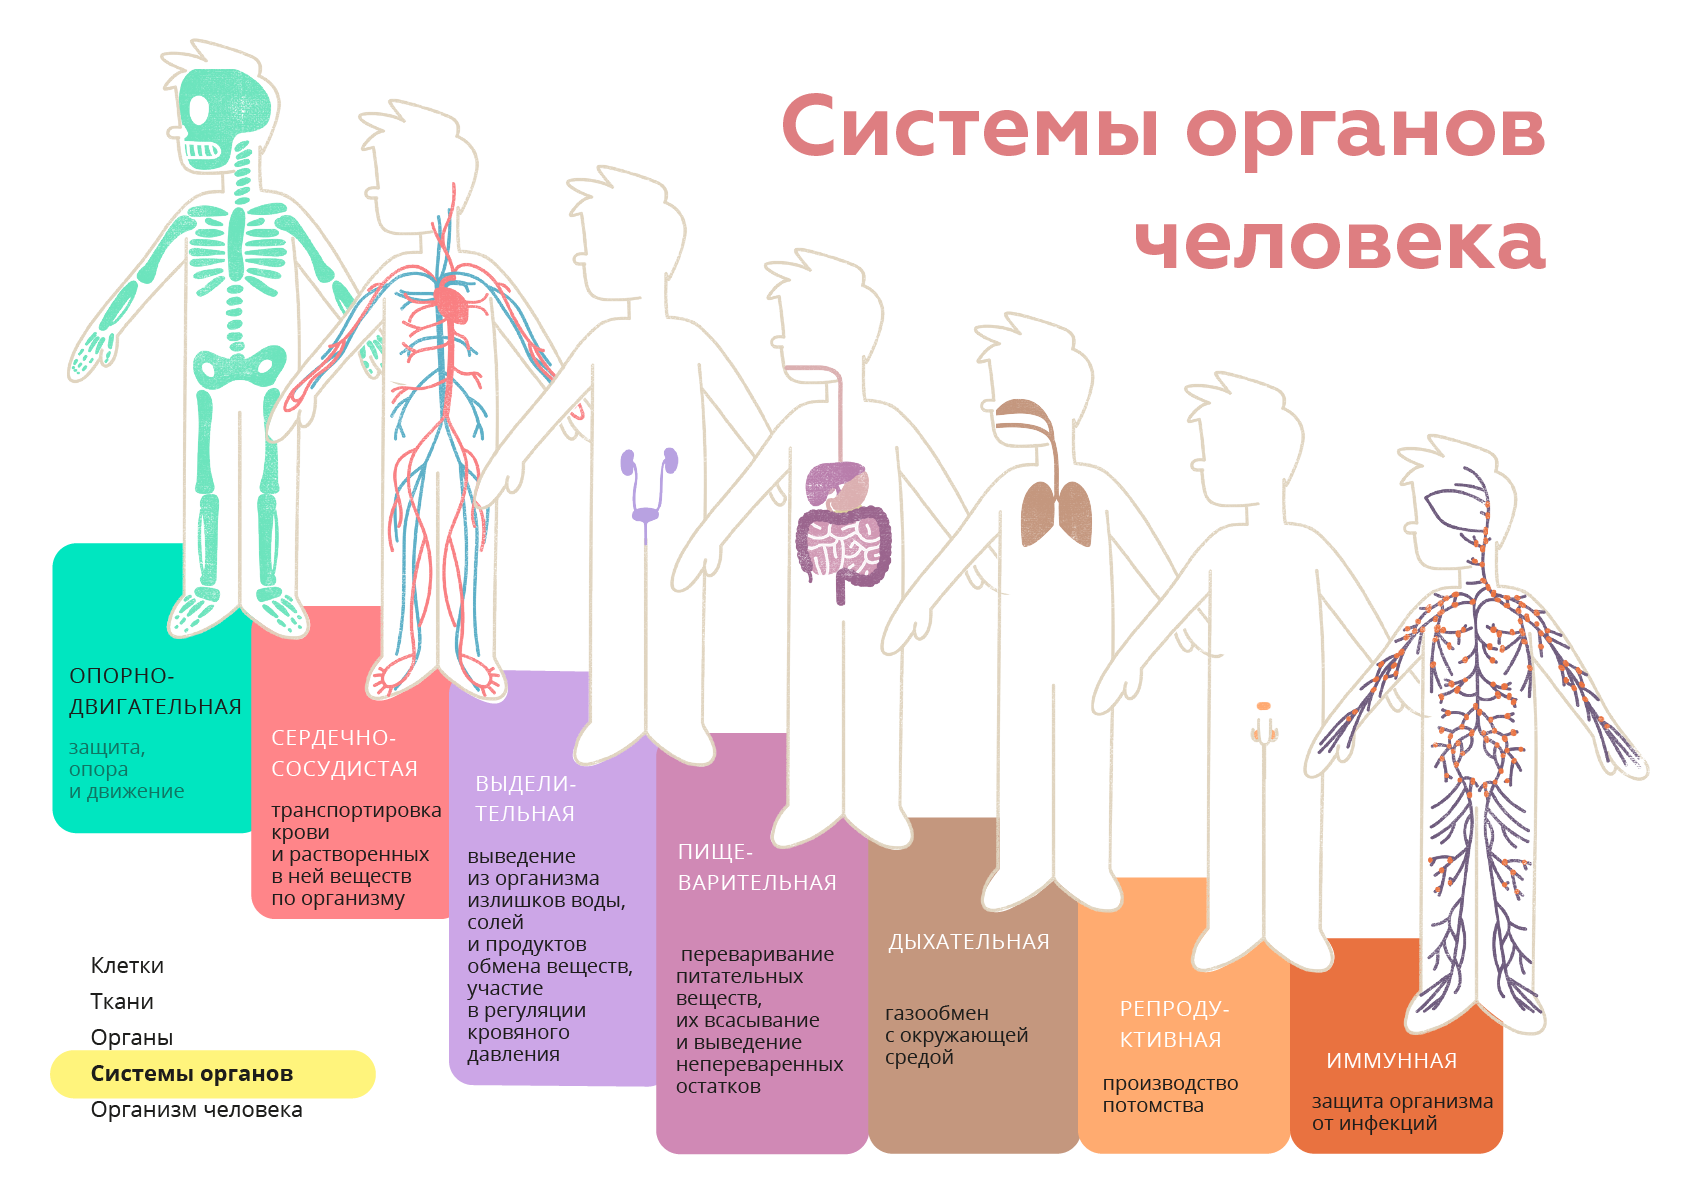 Организм человека фото внутренние органы женщины с описанием на русском языке